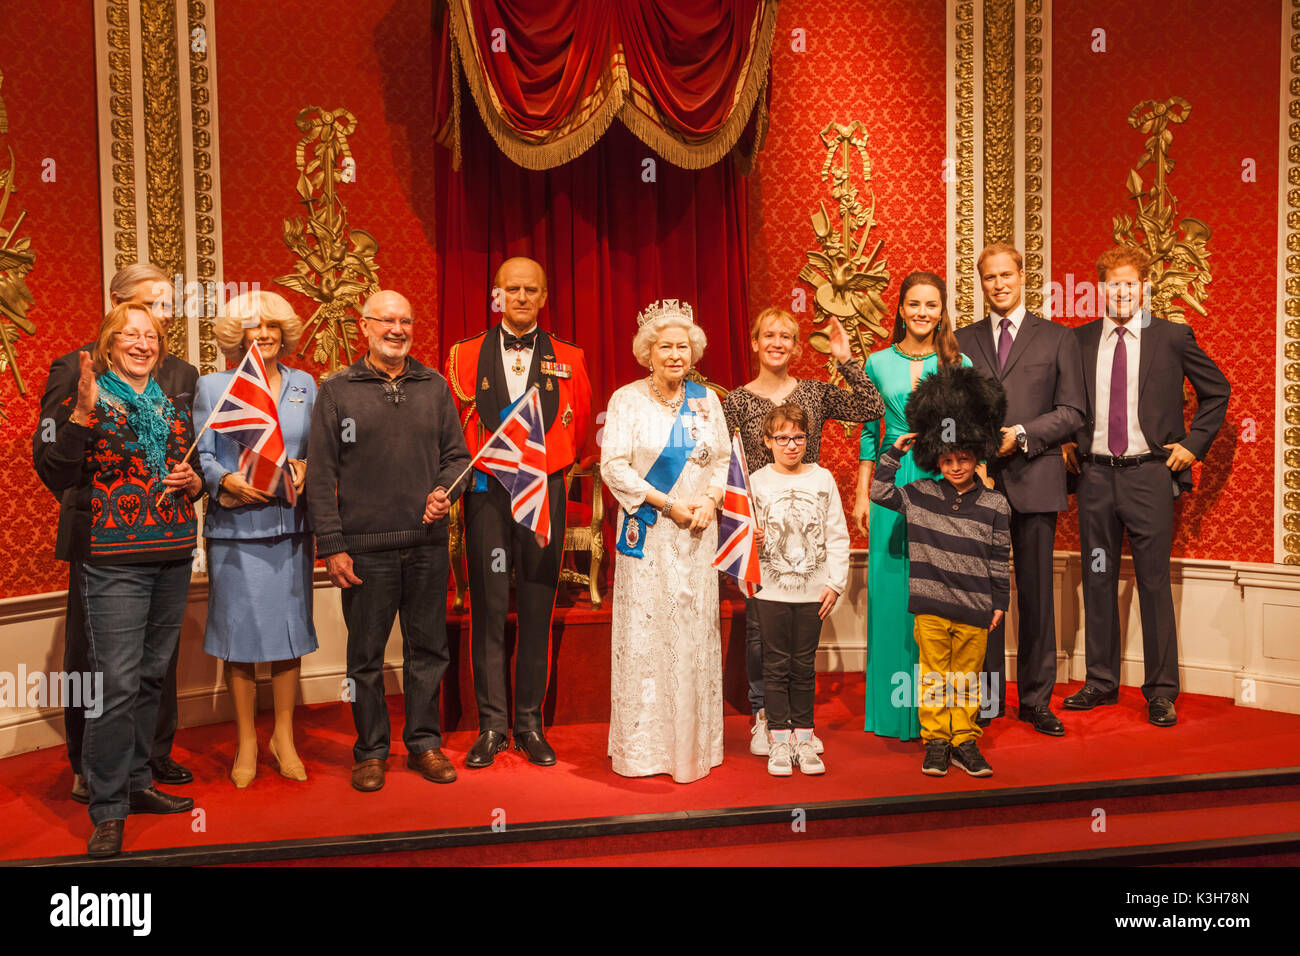 England, London, Madame Tussauds, Touristen posieren mit Wachs Figuren von der Königin und der königlichen Familie Stockfoto